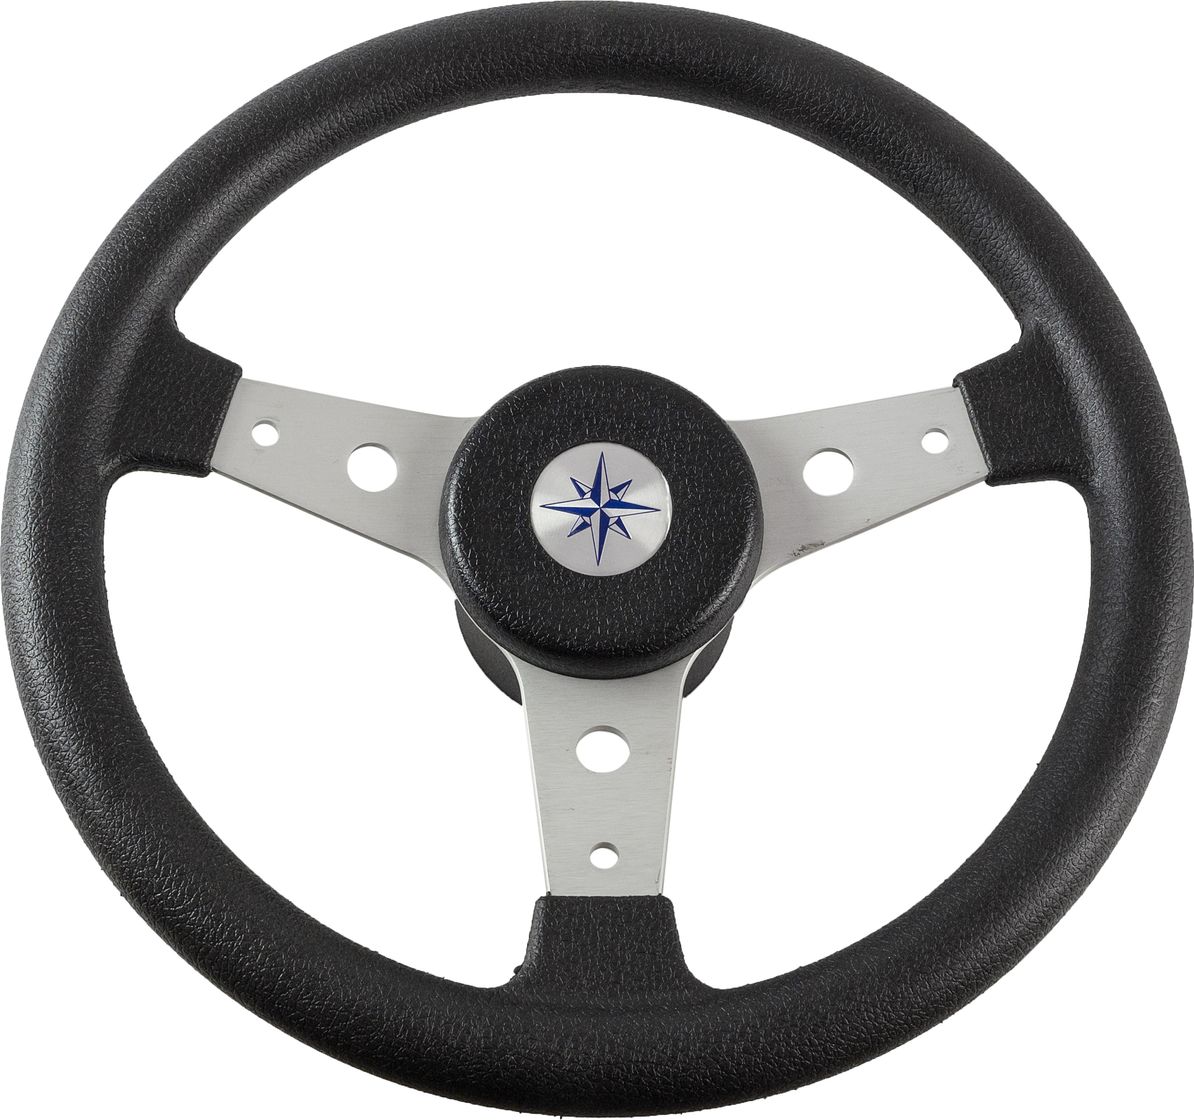 Рулевое колесо DELFINO обод черный, спицы серебряные д. 340 мм VN70401-01 рулевое колесо e chance обод и спицы черные д 330 мм d33 ec